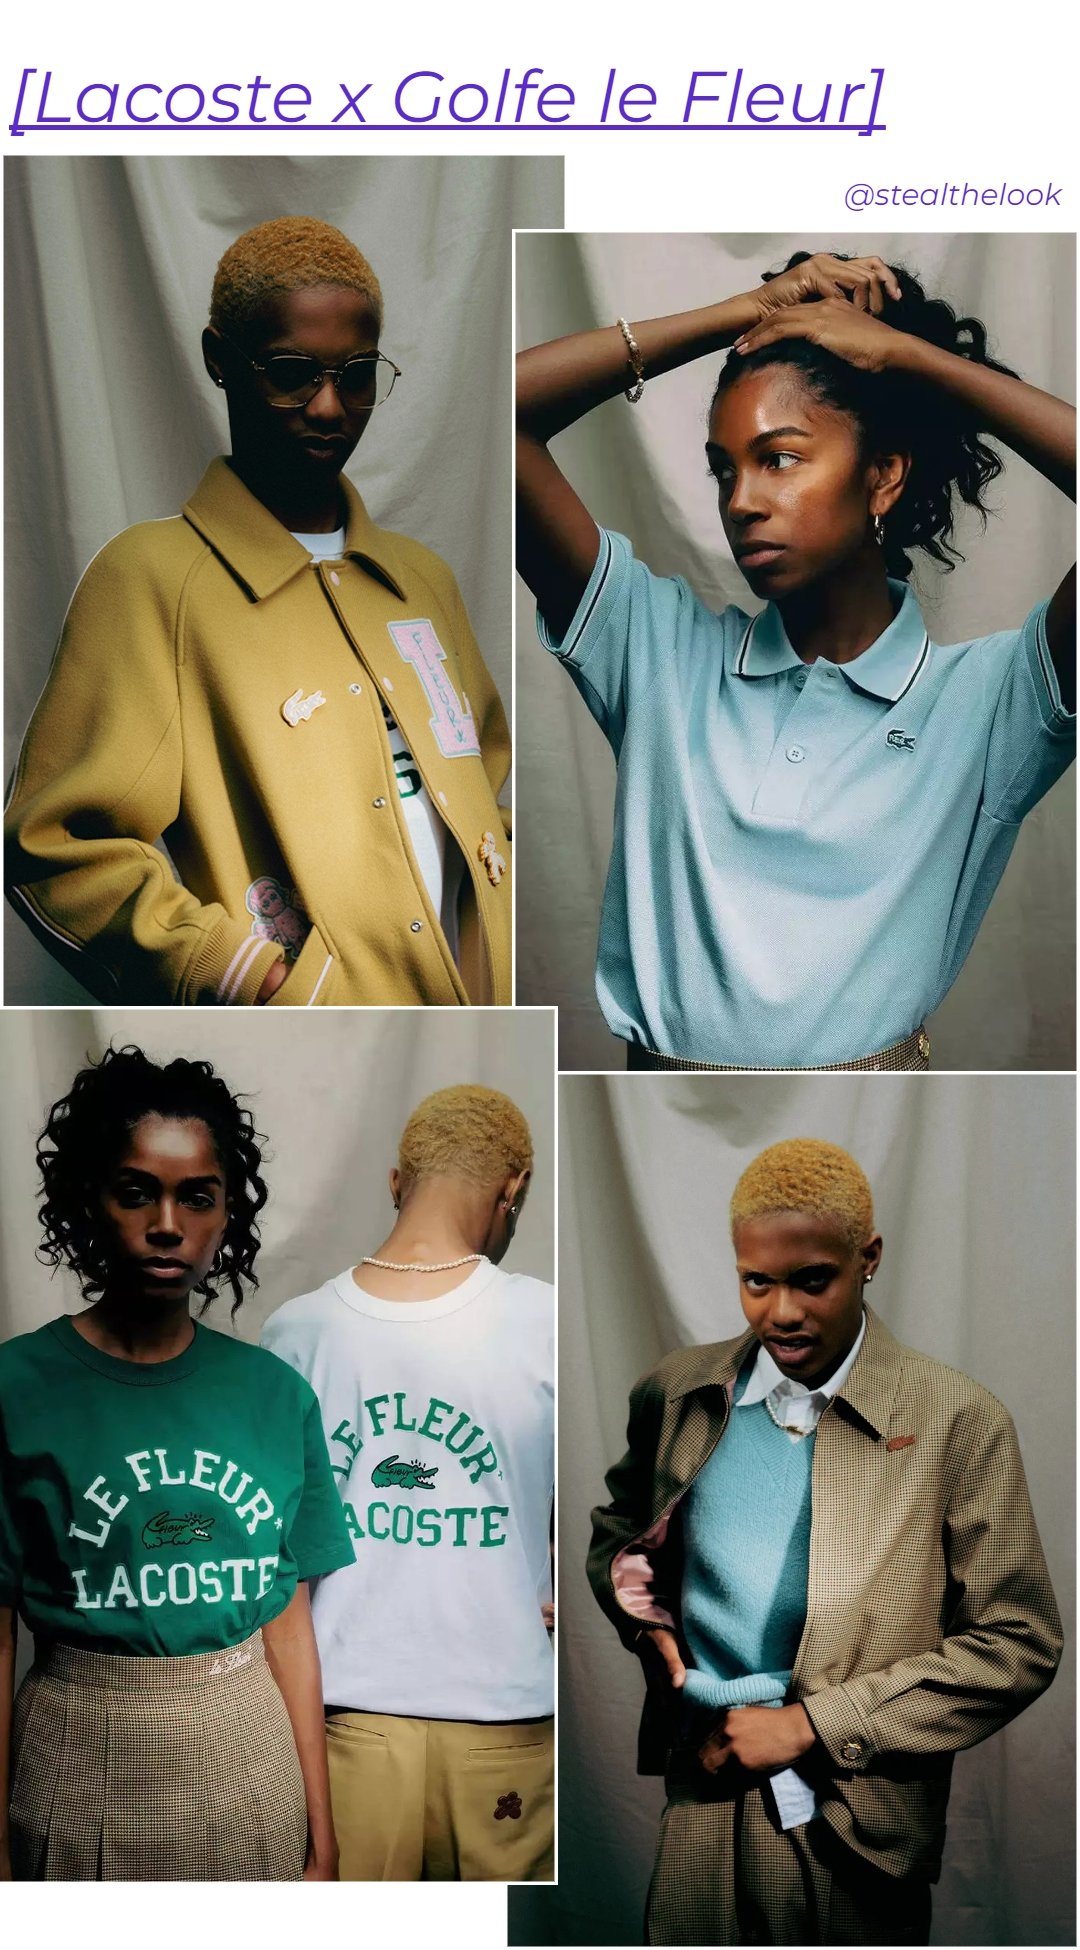 Lacoste x GOLF le FLEUR - coleção - lançamentos de moda - collab - divulgação - https://stealthelook.com.br